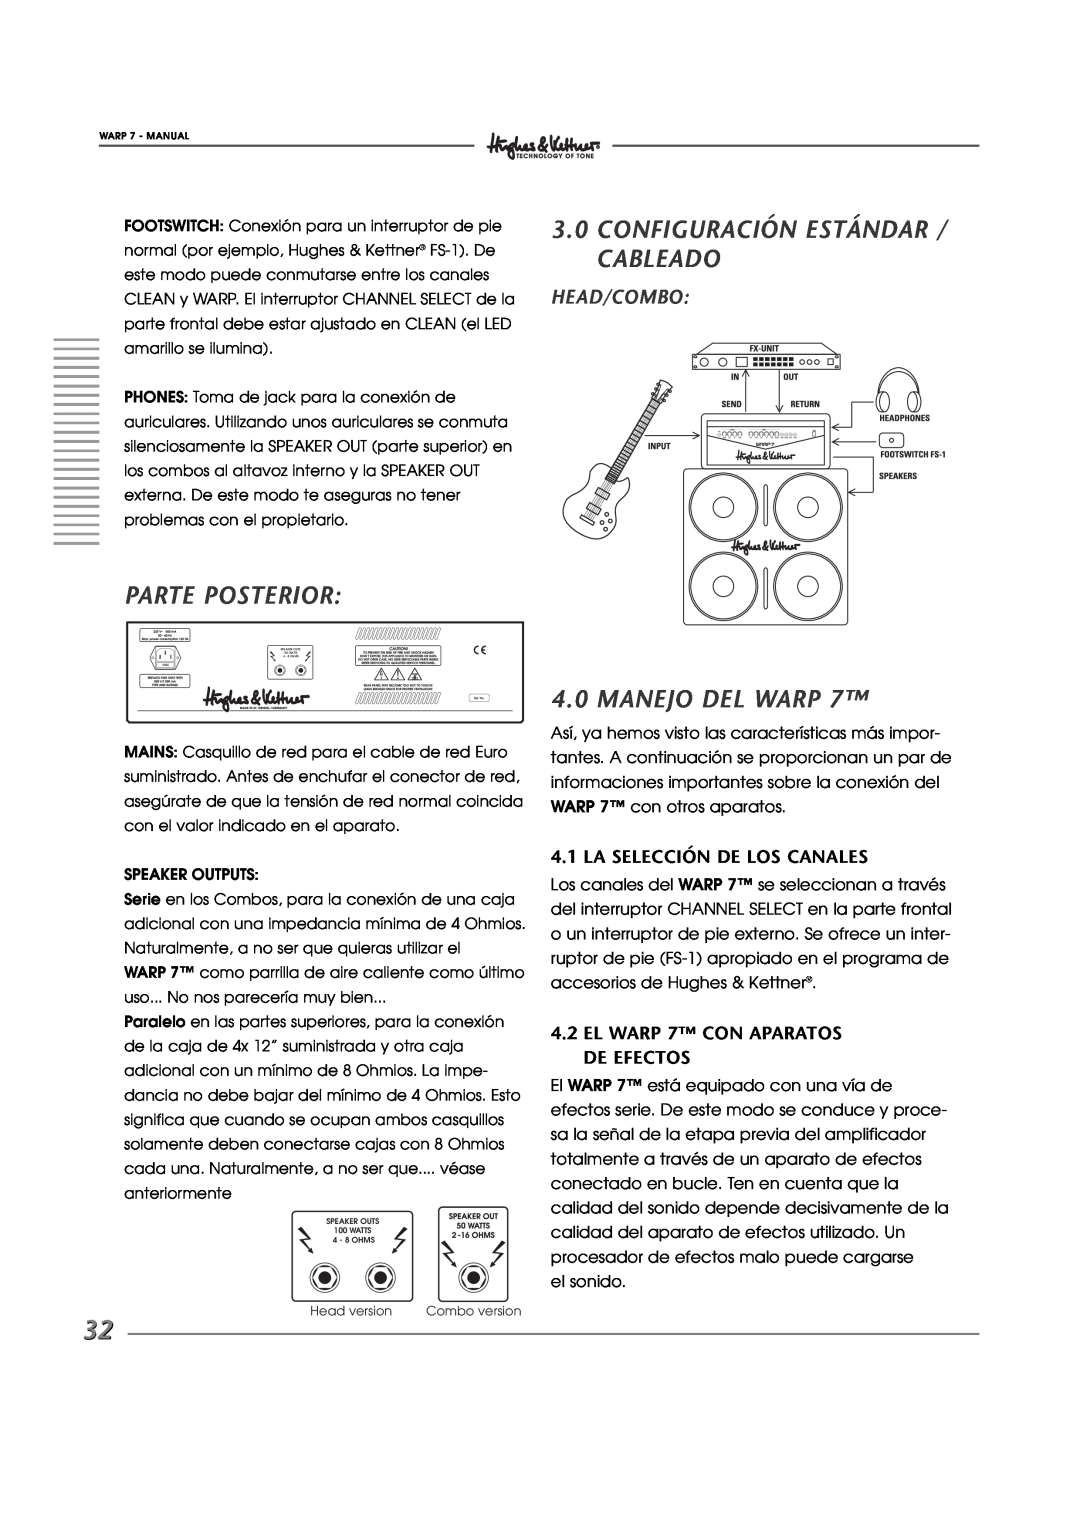 Hughes WARP7 manual Parte Posterior, 3.0CONFIGURACIÓN ESTÁNDAR / CABLEADO, Manejo Del Warp, La Selección De Los Canales 